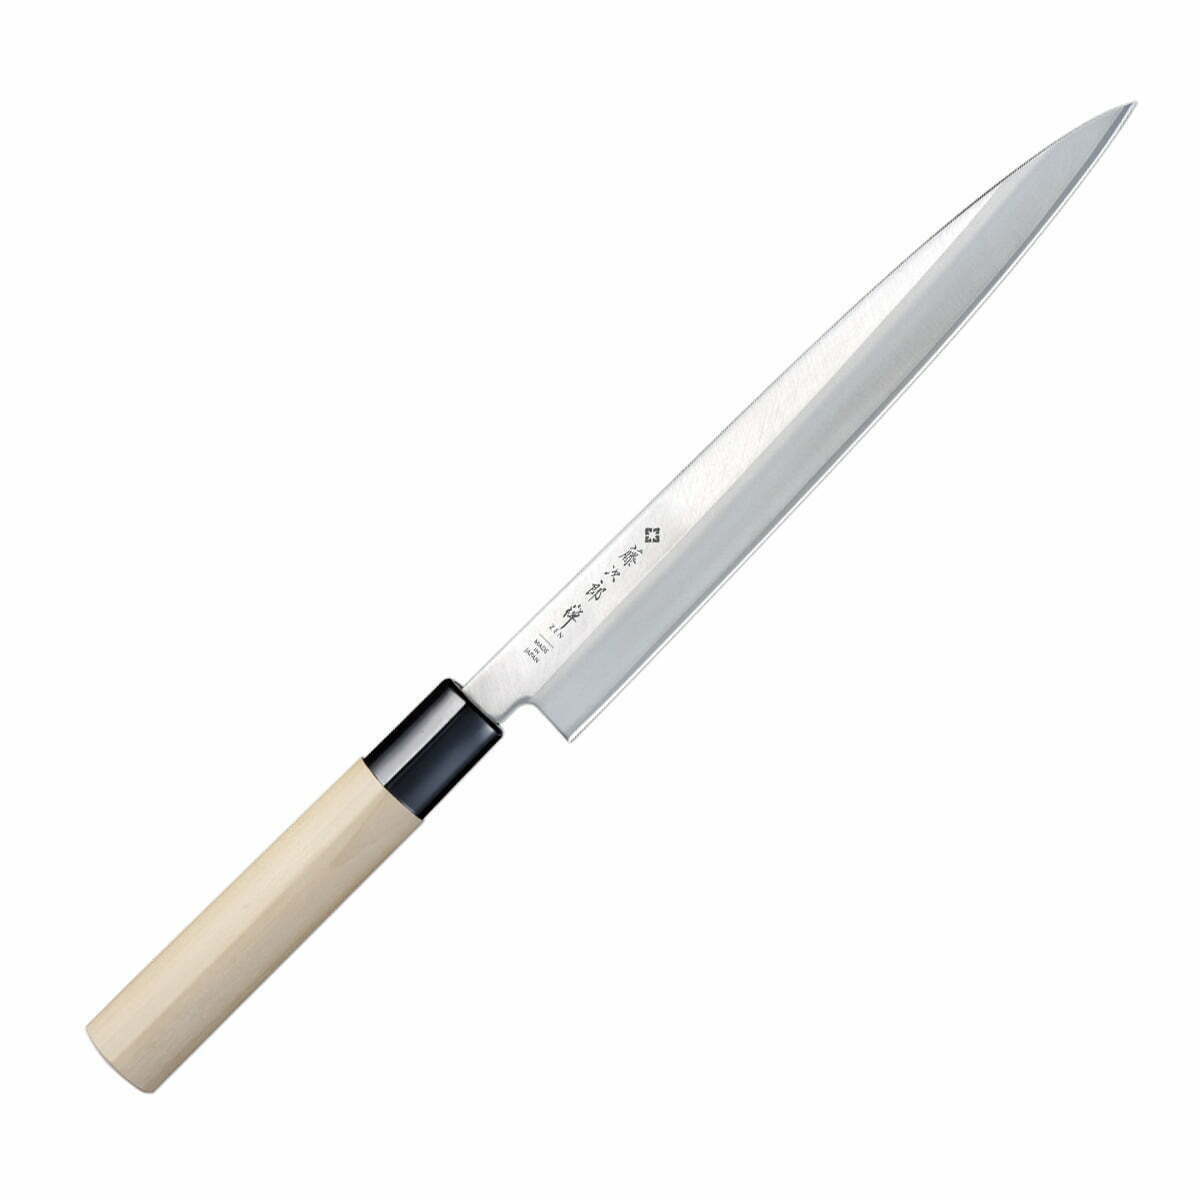 סכין חיתוך פילה דגים יָאנָאגִיבָּה 210מ״מ מחוזקת 3 שכבות: פלדת פחמן יפנית VG-10 עטופה פלדת אל-חלד גימור מט מלוטש טוג׳ירו יפן